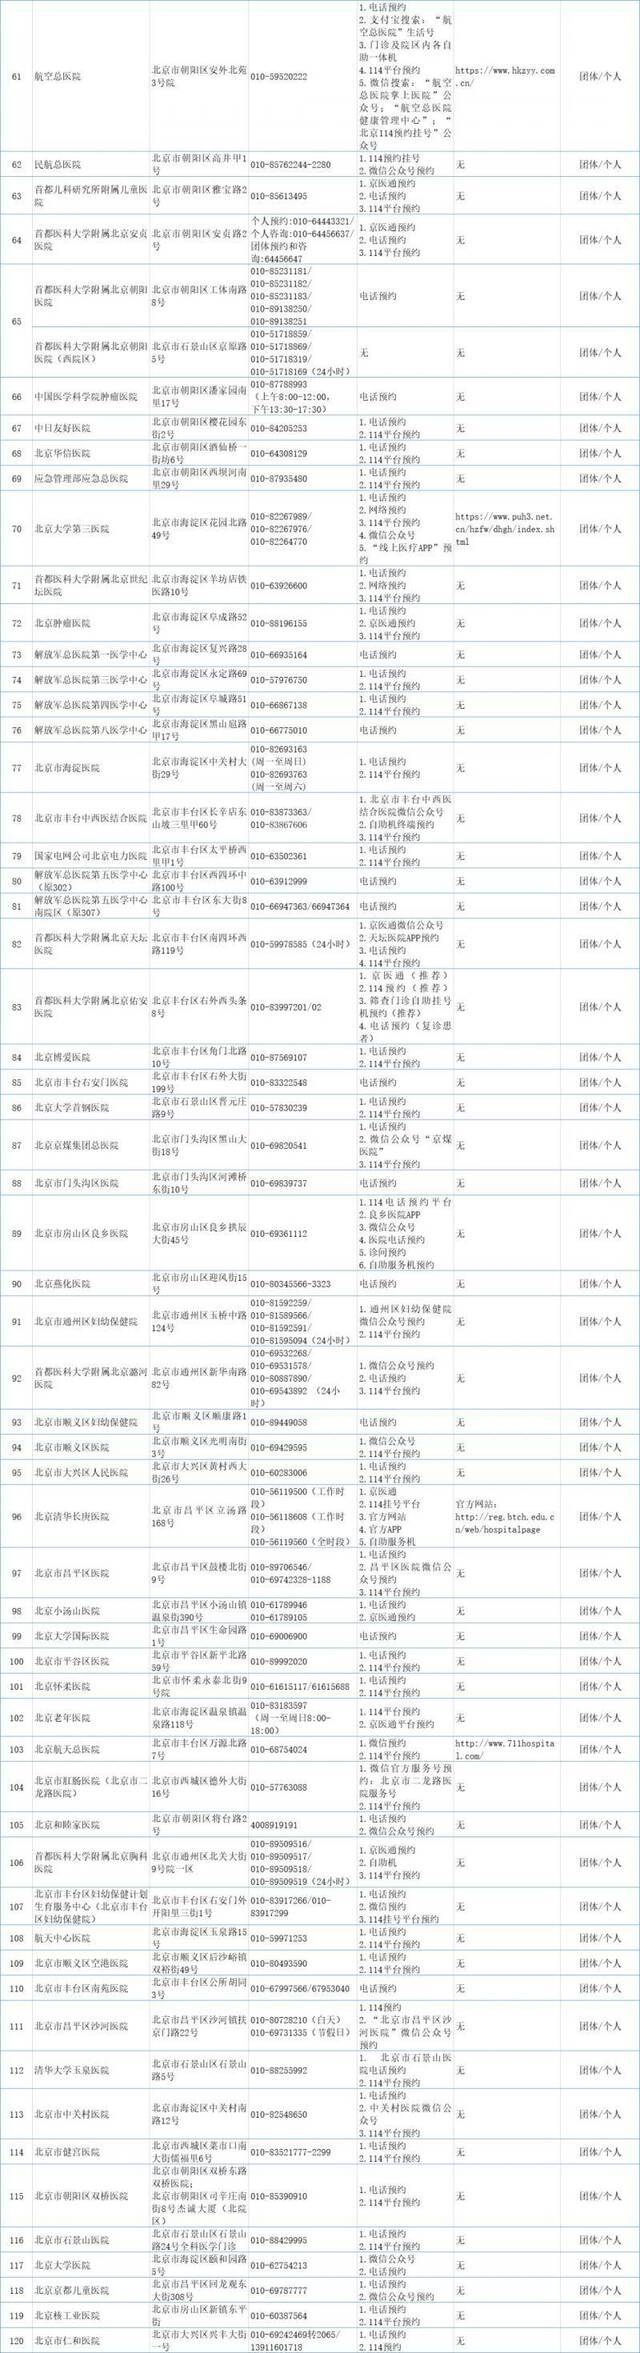 北京市公布175所提供新冠病毒核酸检测服务的医疗卫生机构名单